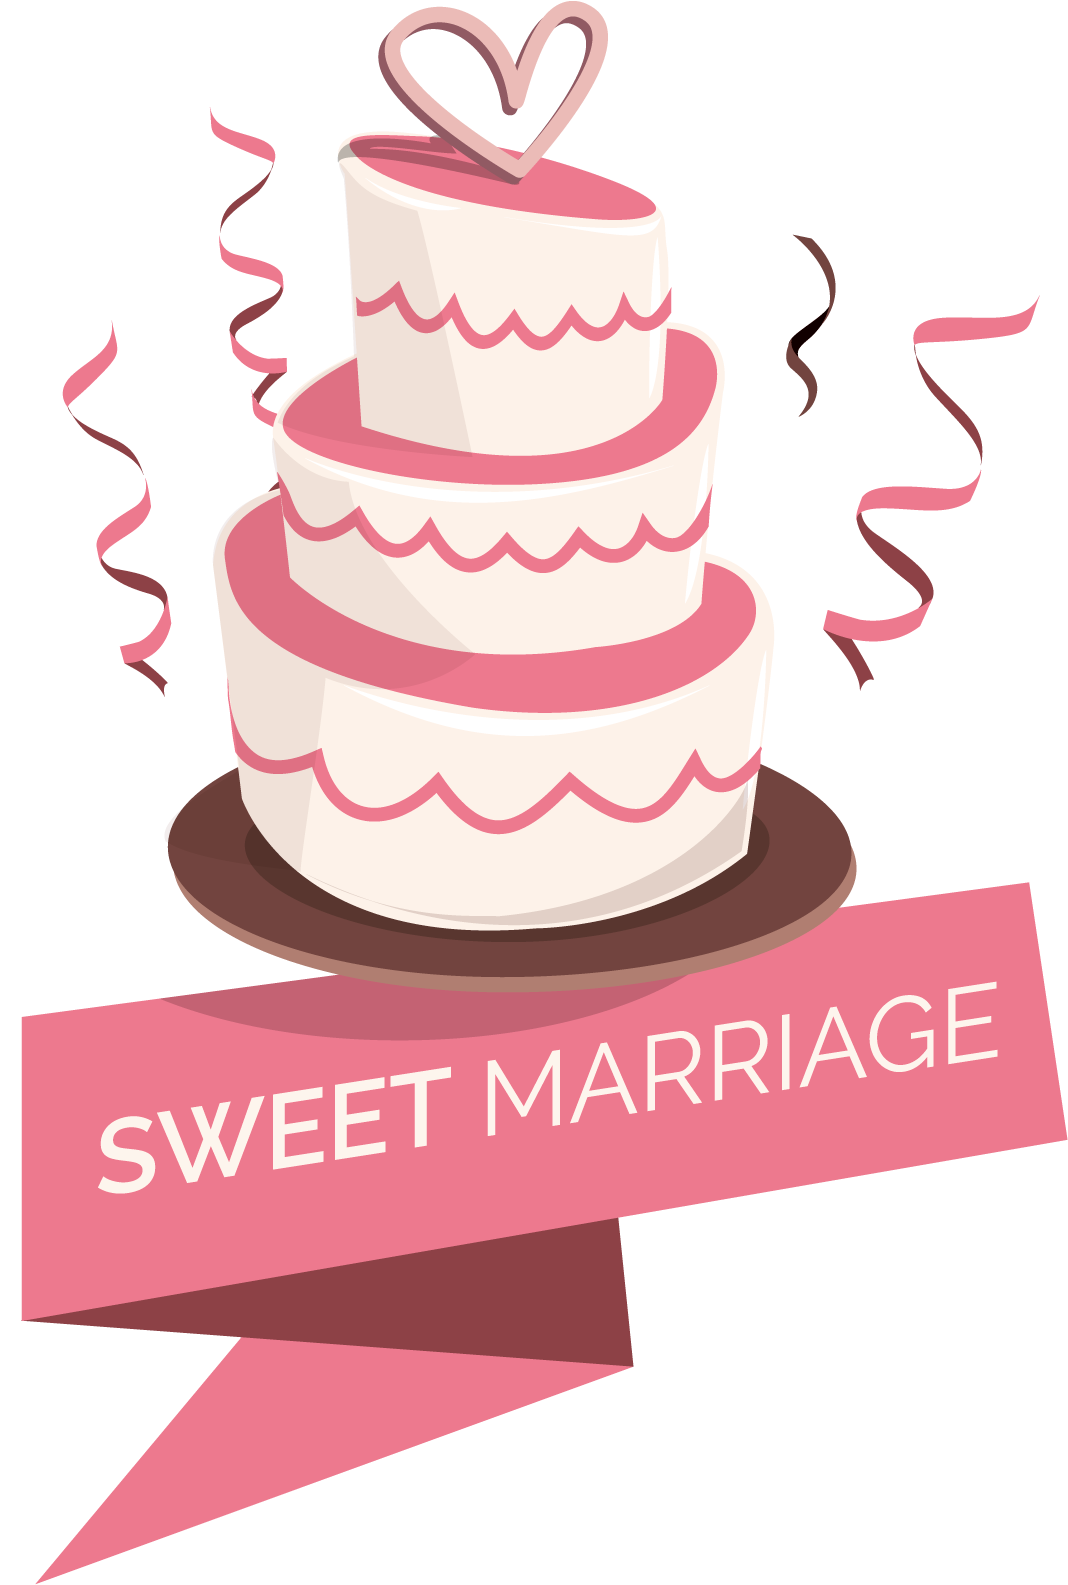 Sweet Marriage Cake Logo